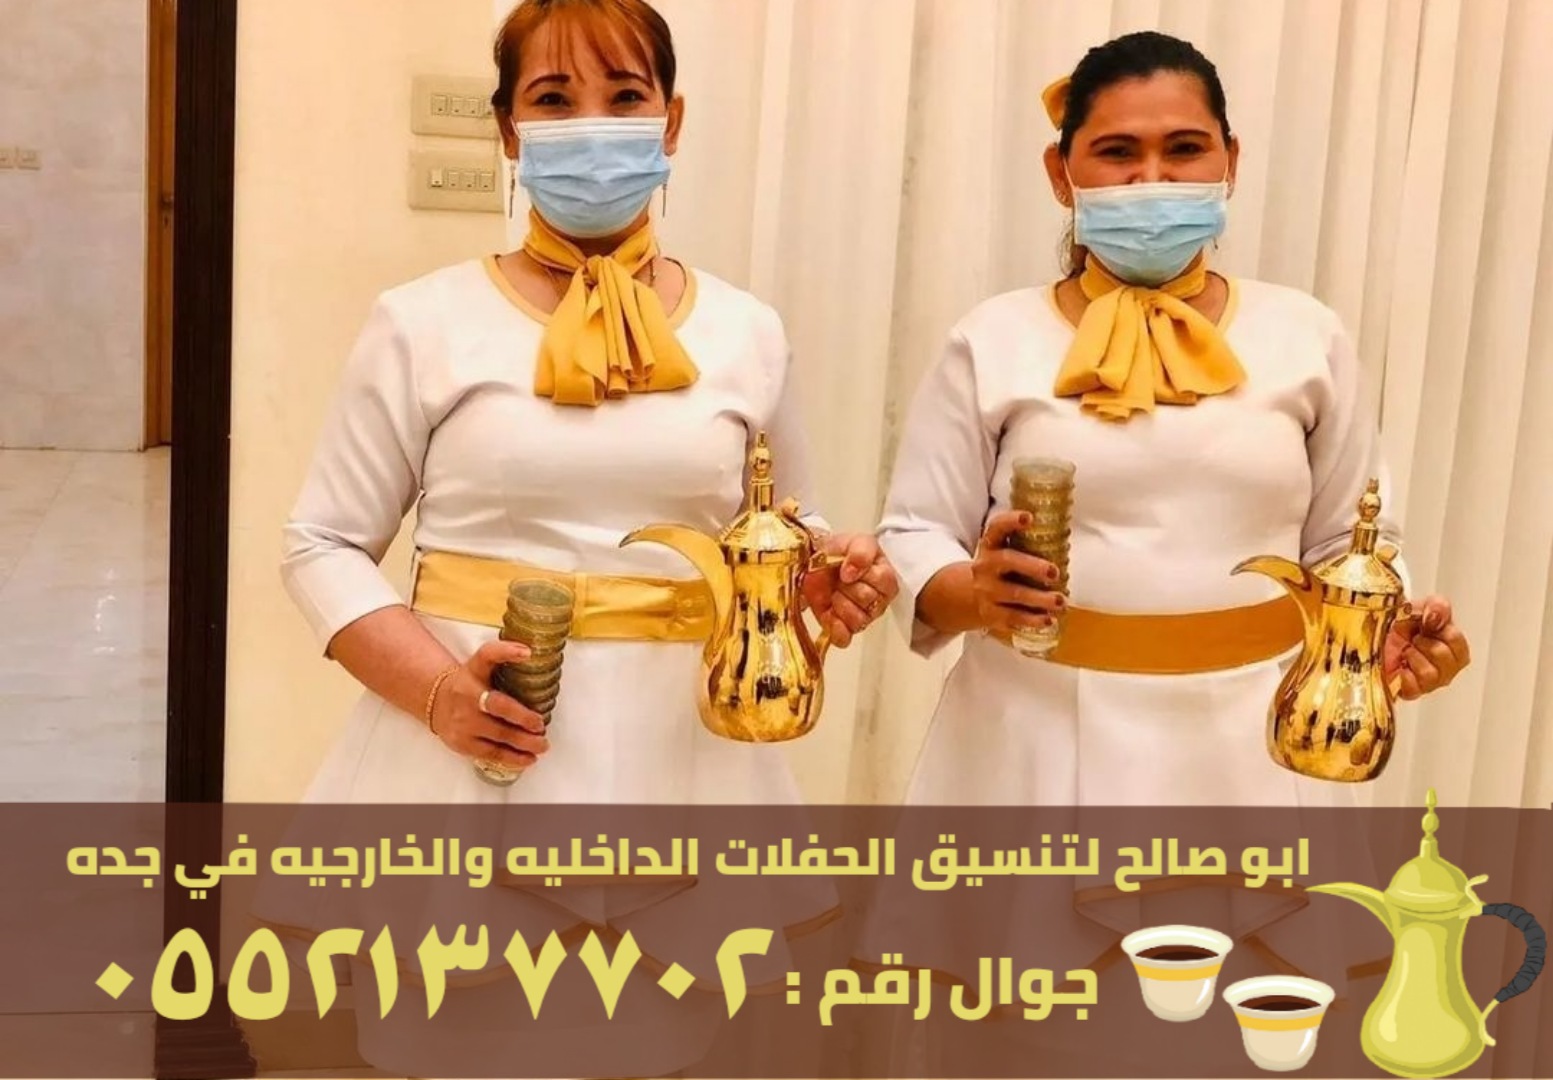 صبابين قهوة و صبابات في جدة, 0552137702 P_2456wy8op5